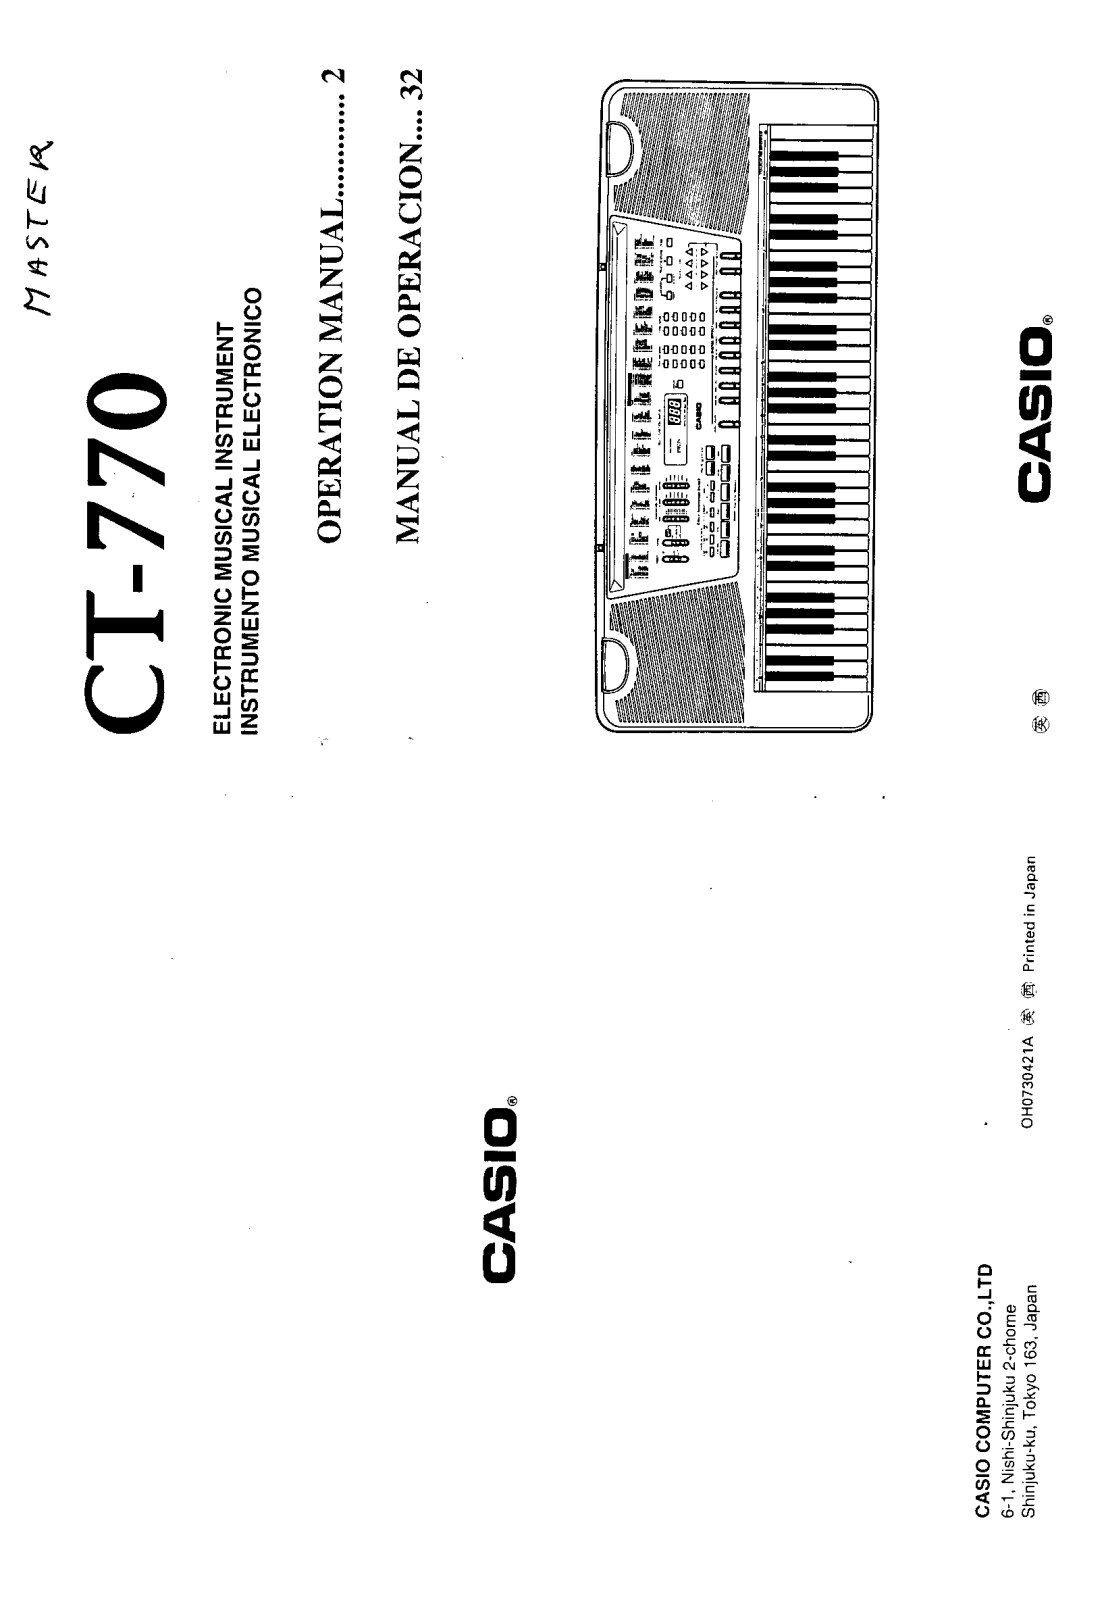 Casio CT-770 User Manual